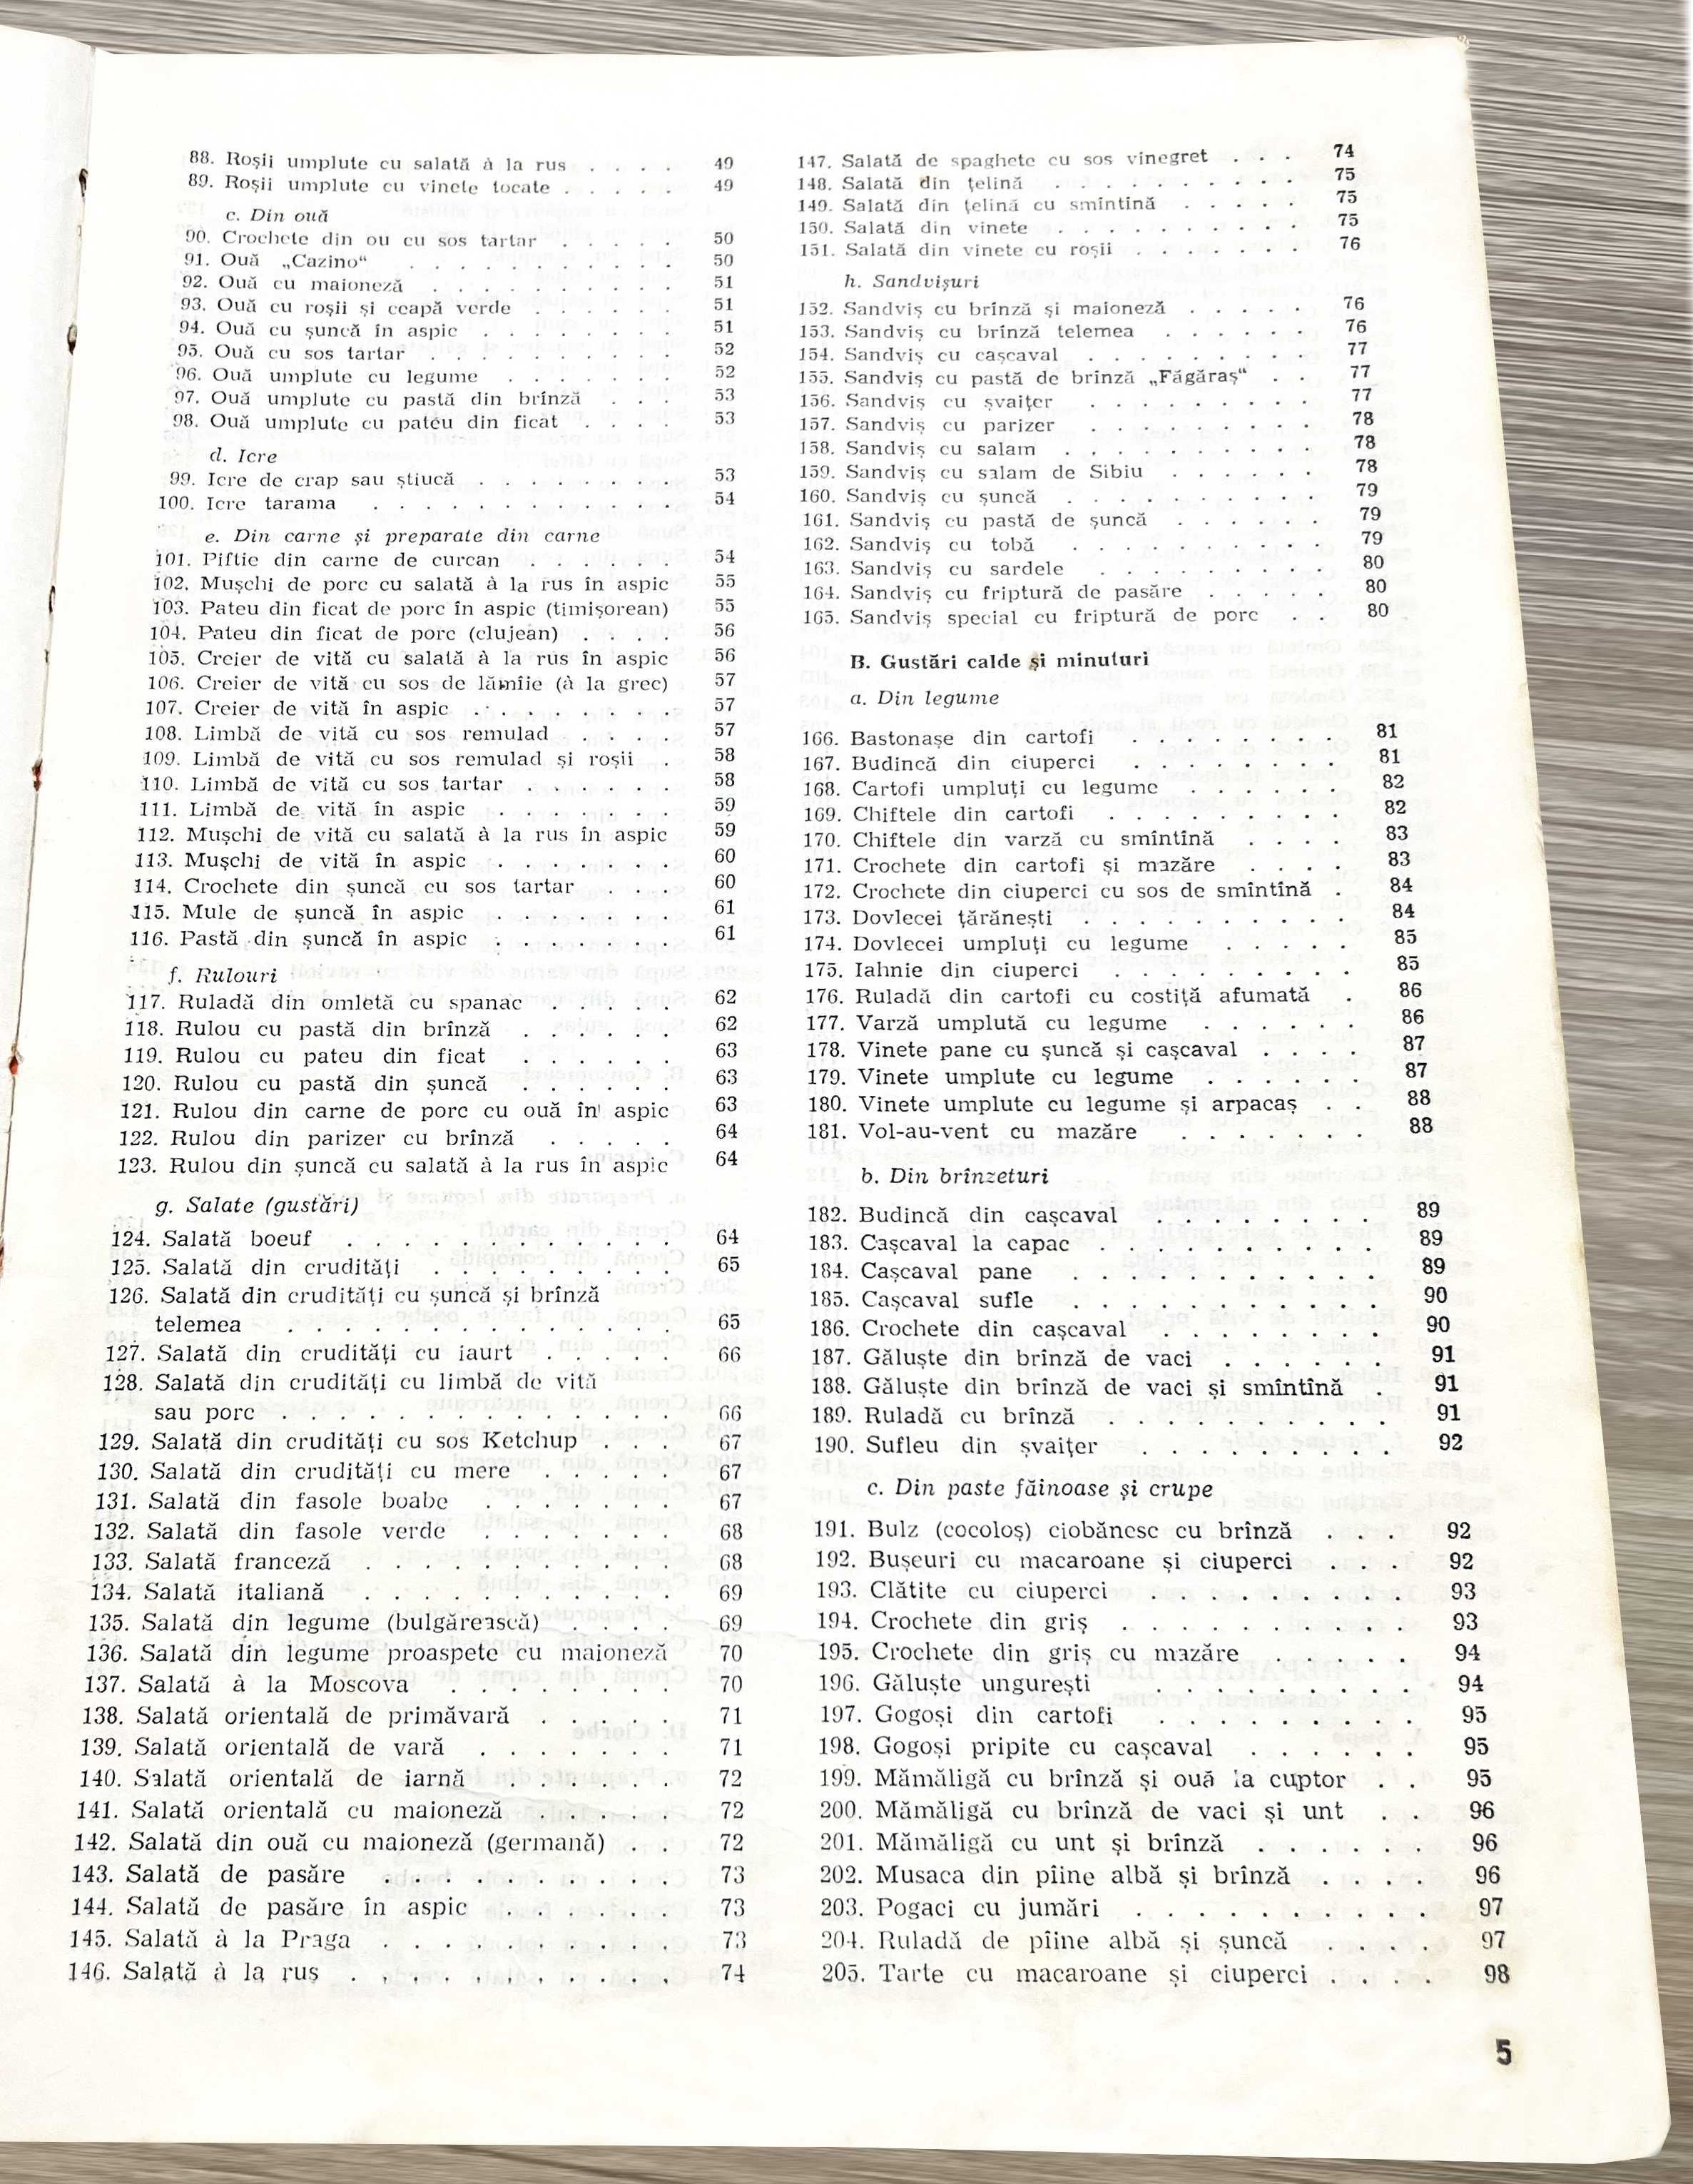 Rețetar-Tip pentru preparate culinare folosite în Restaurante (1982)